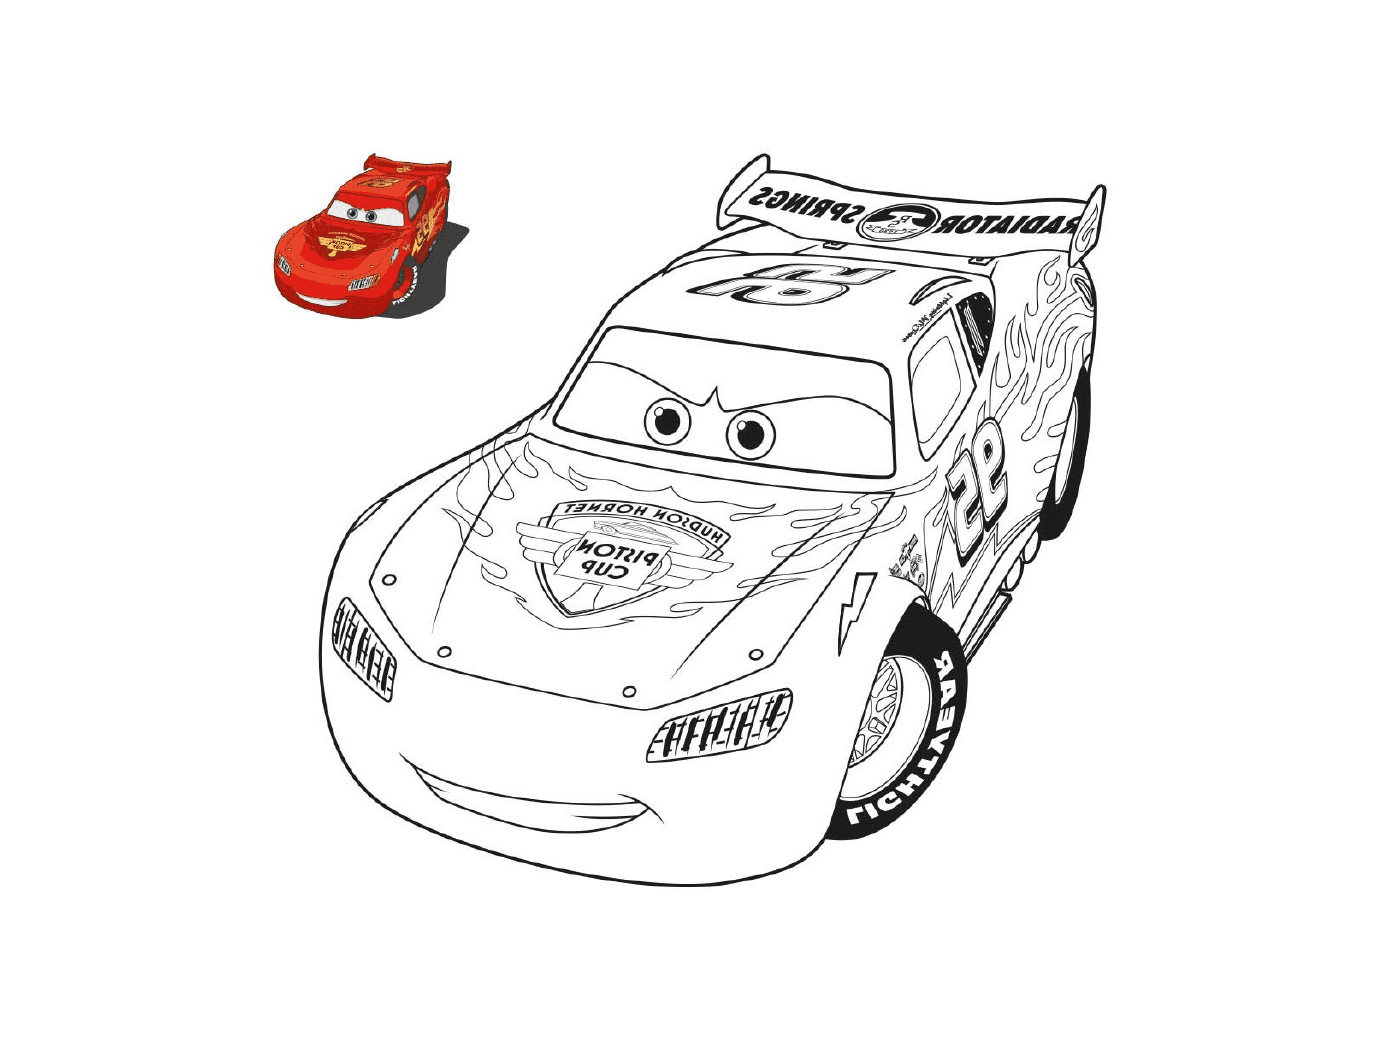  Машины 3 с окраской, гоночная машина и игрушечная машина 